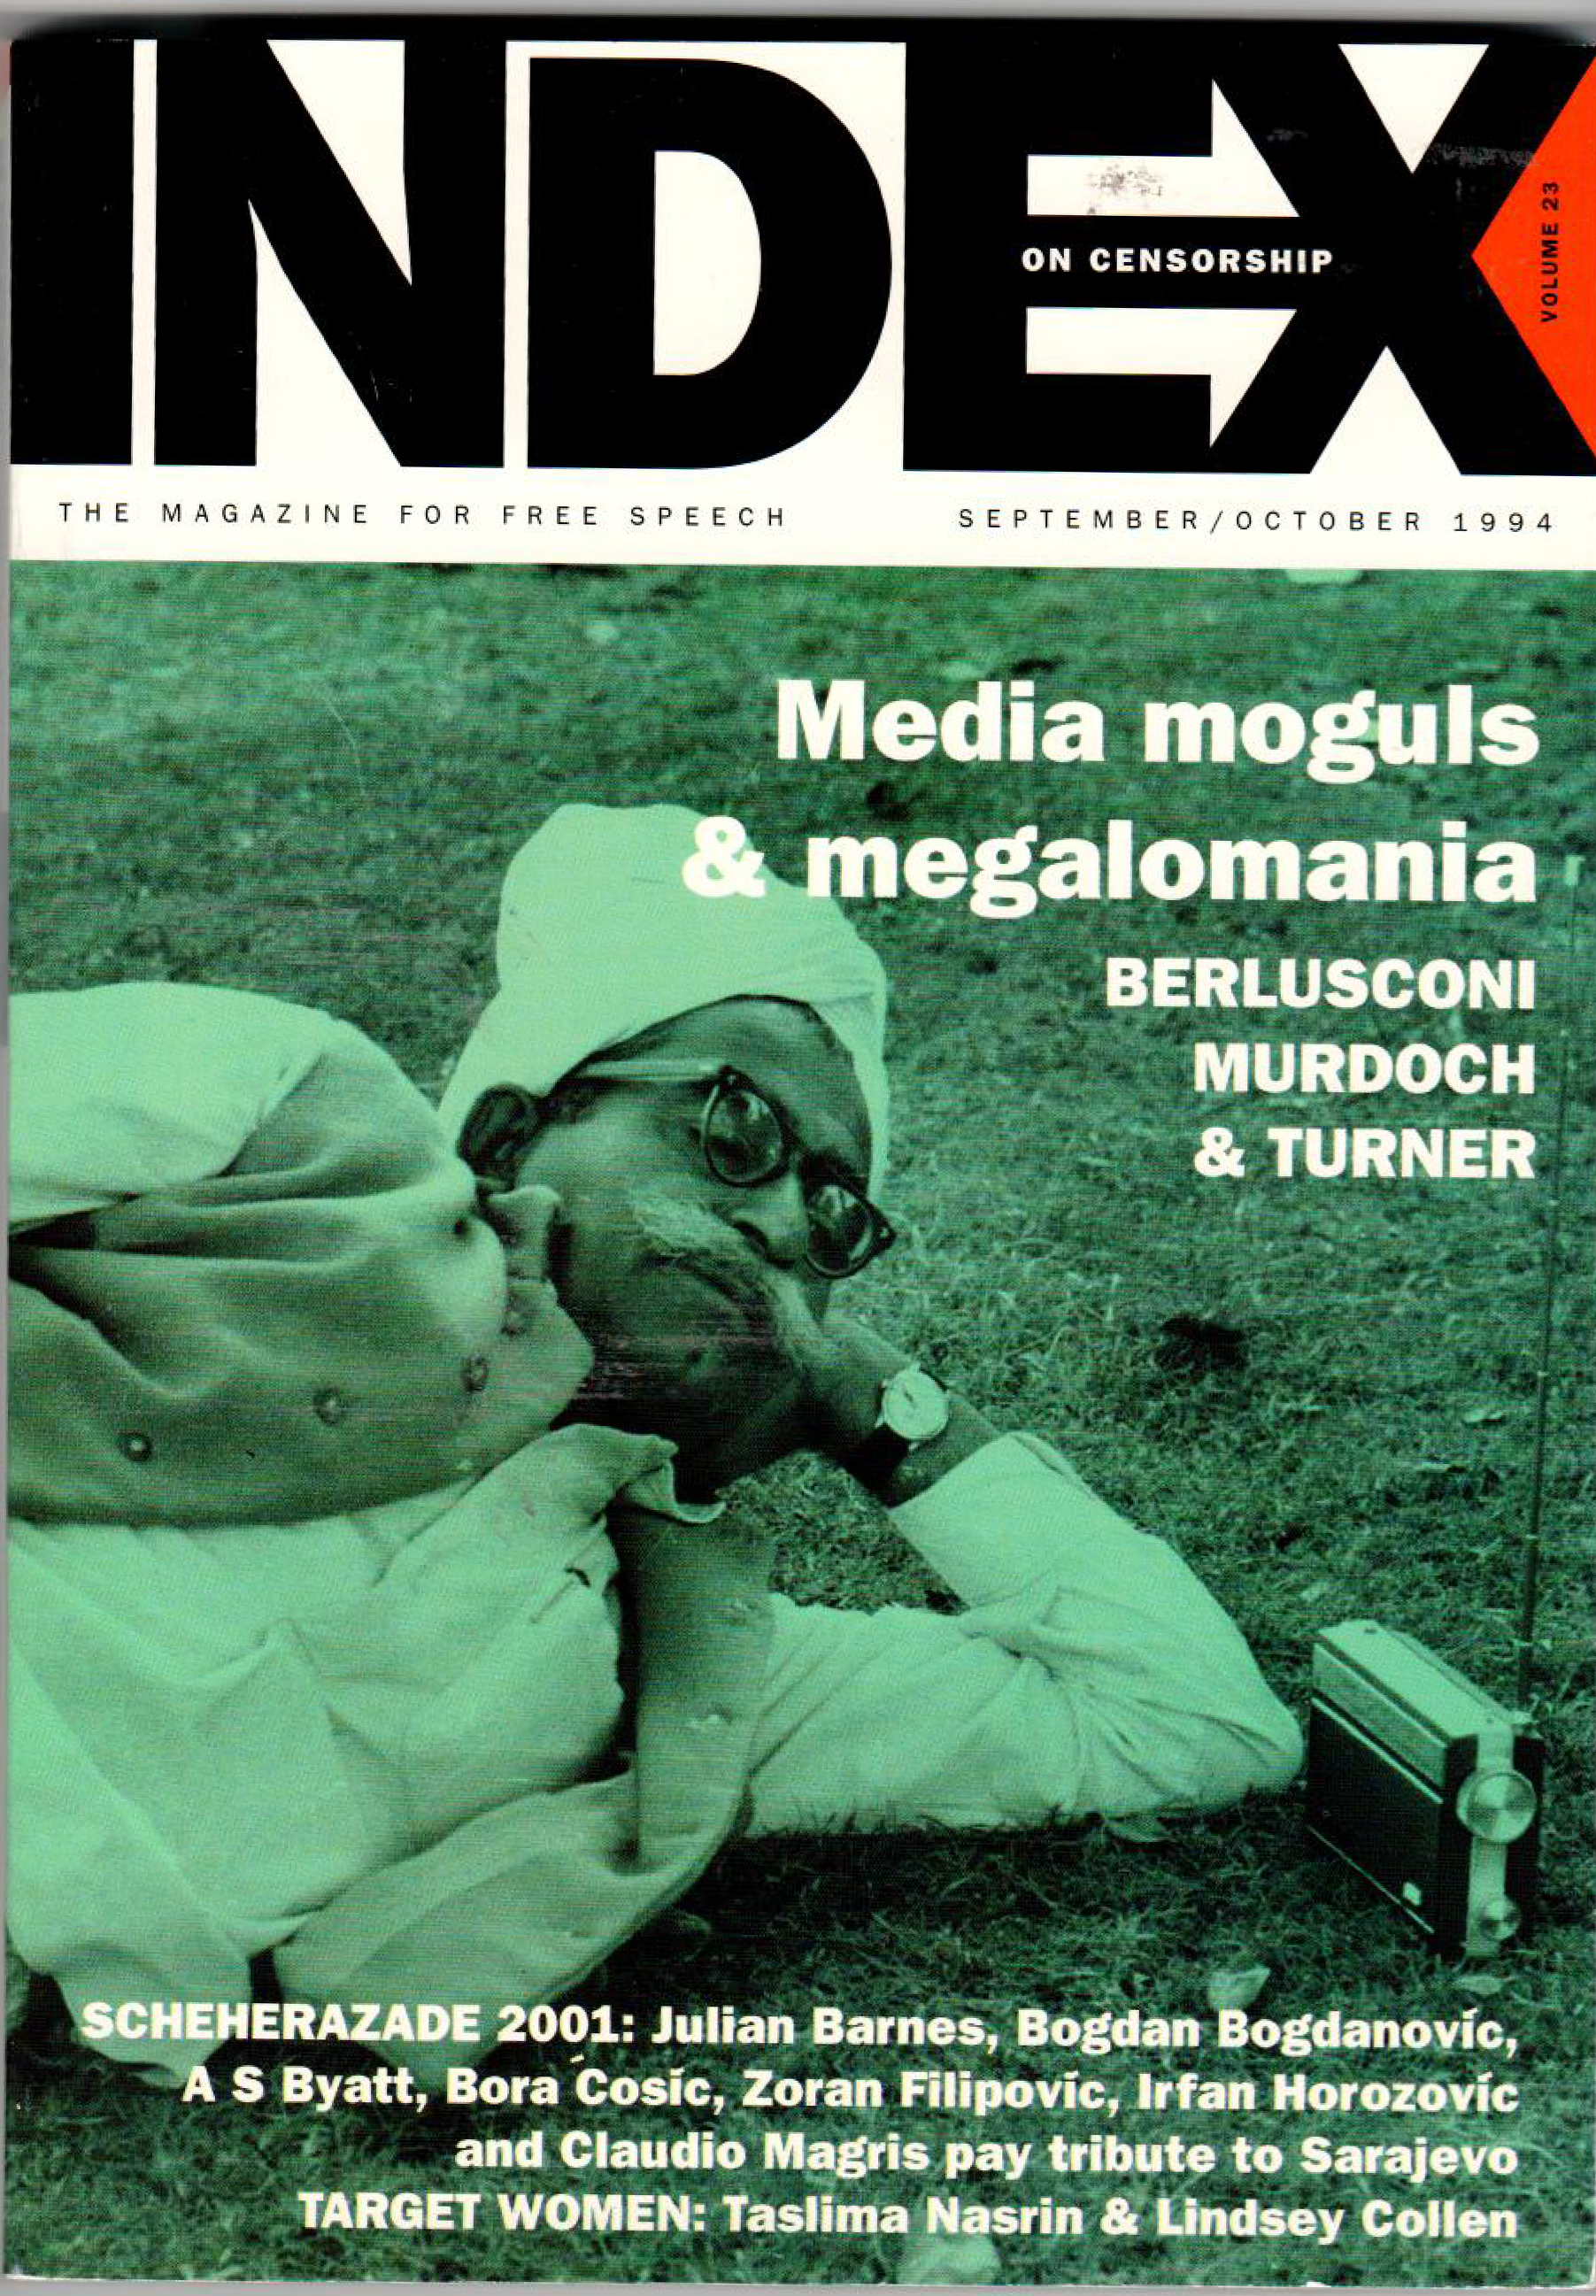 Media moguls & megalomania, the September 1994 issue of Index on Censorship magazine